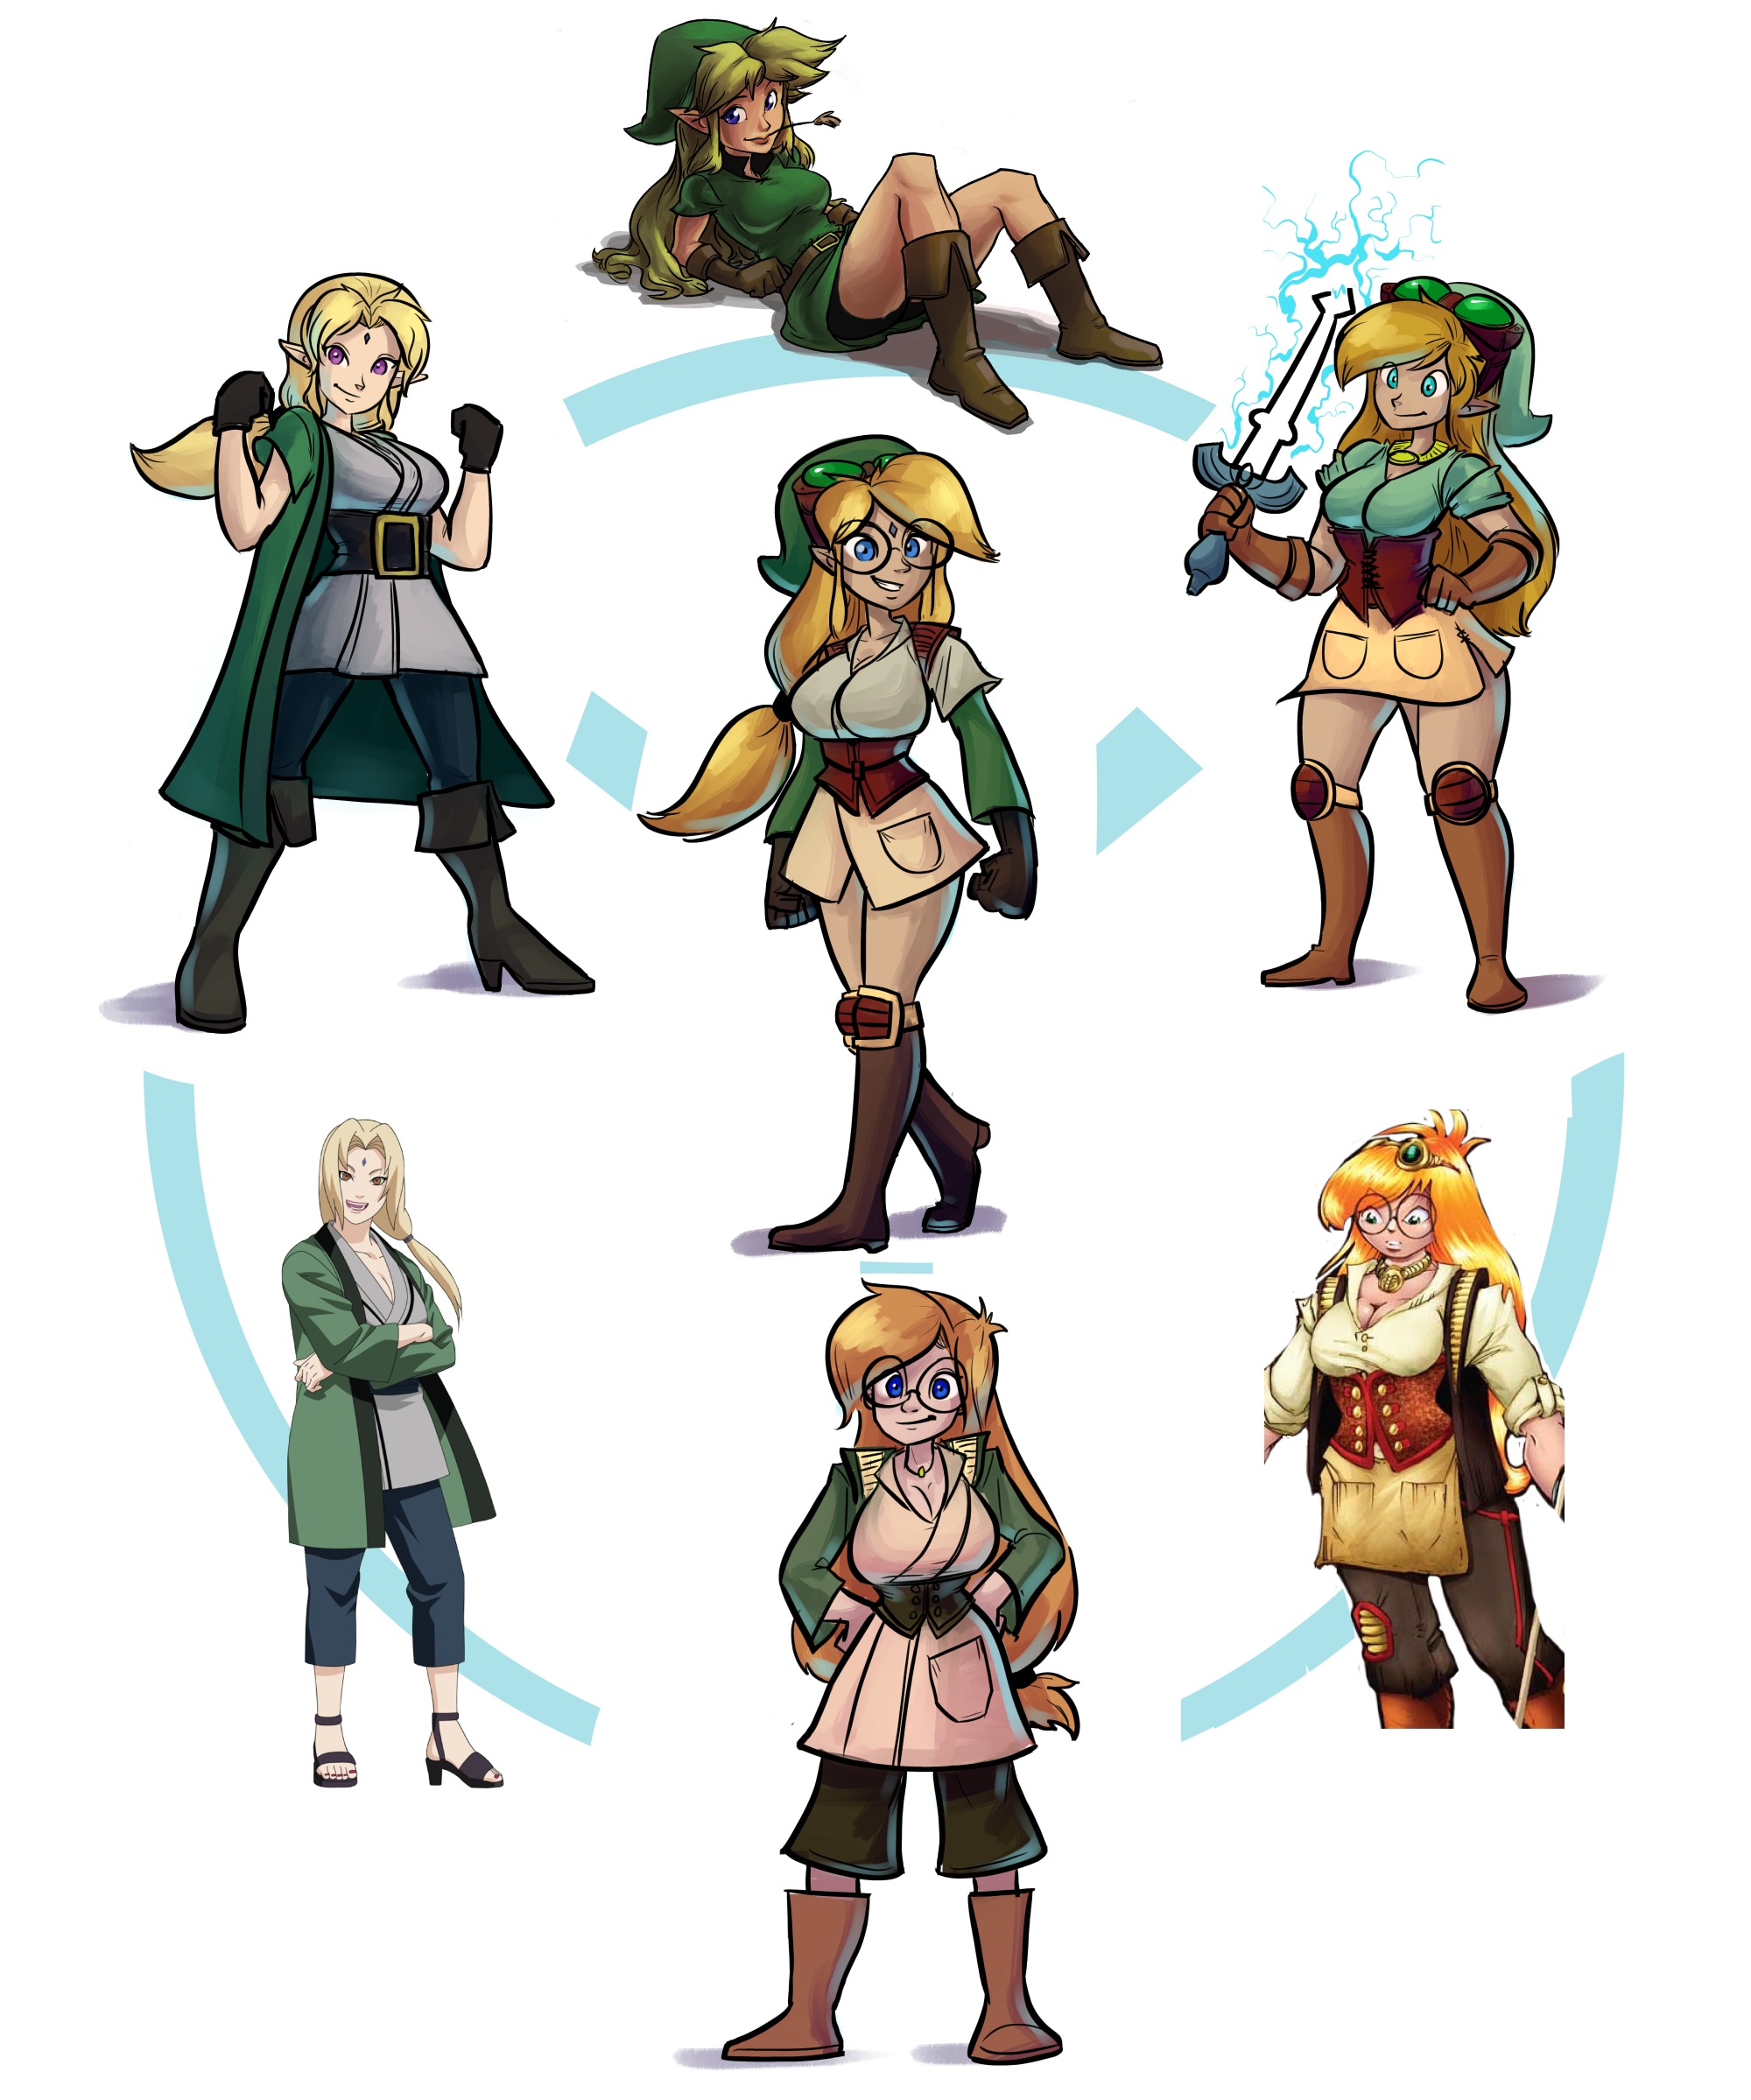 OOT Zelda :.: A safe Hyrule by Gwan-chan on DeviantArt